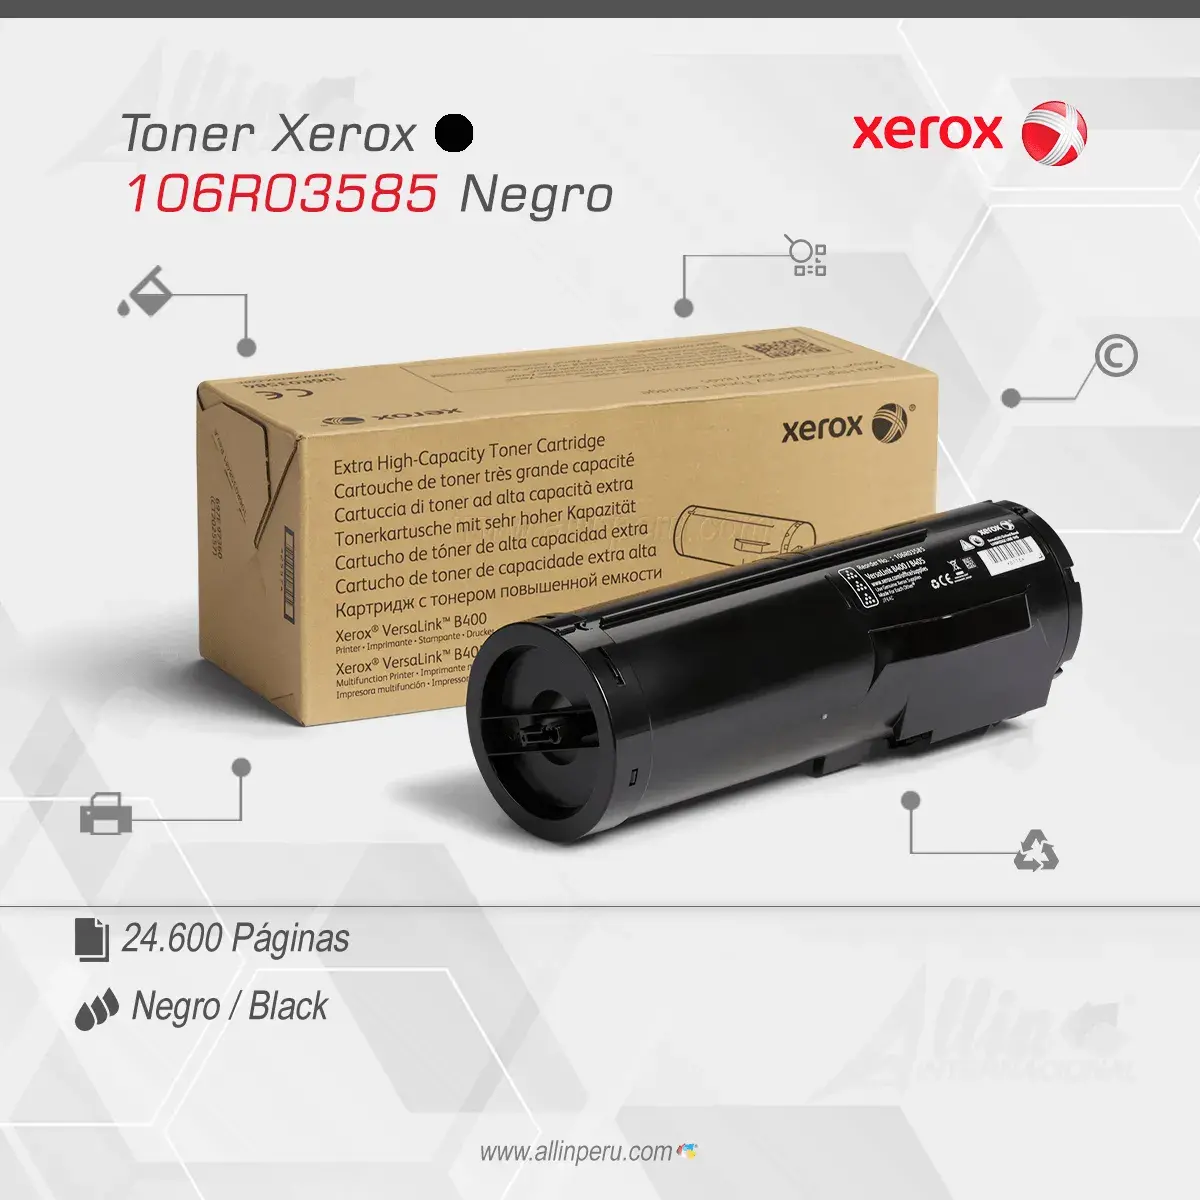 Tóner Xerox 106R03585 este cartucho está hecho para impresoras VersaLink B400